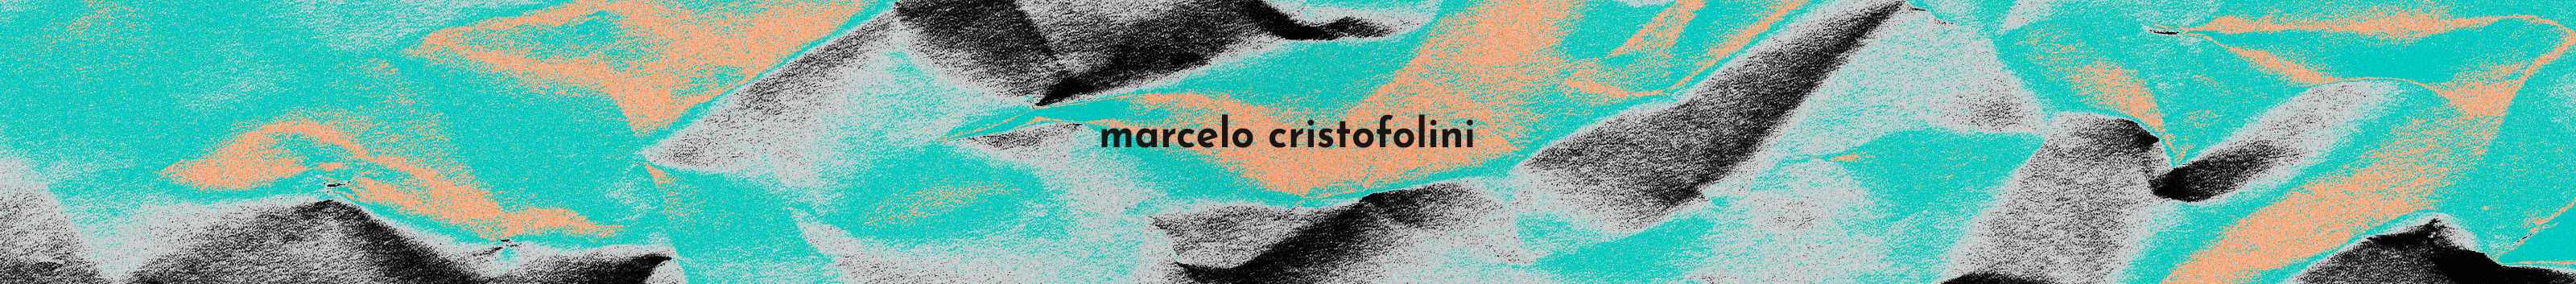 Marcelo Cristofolini のプロファイルバナー